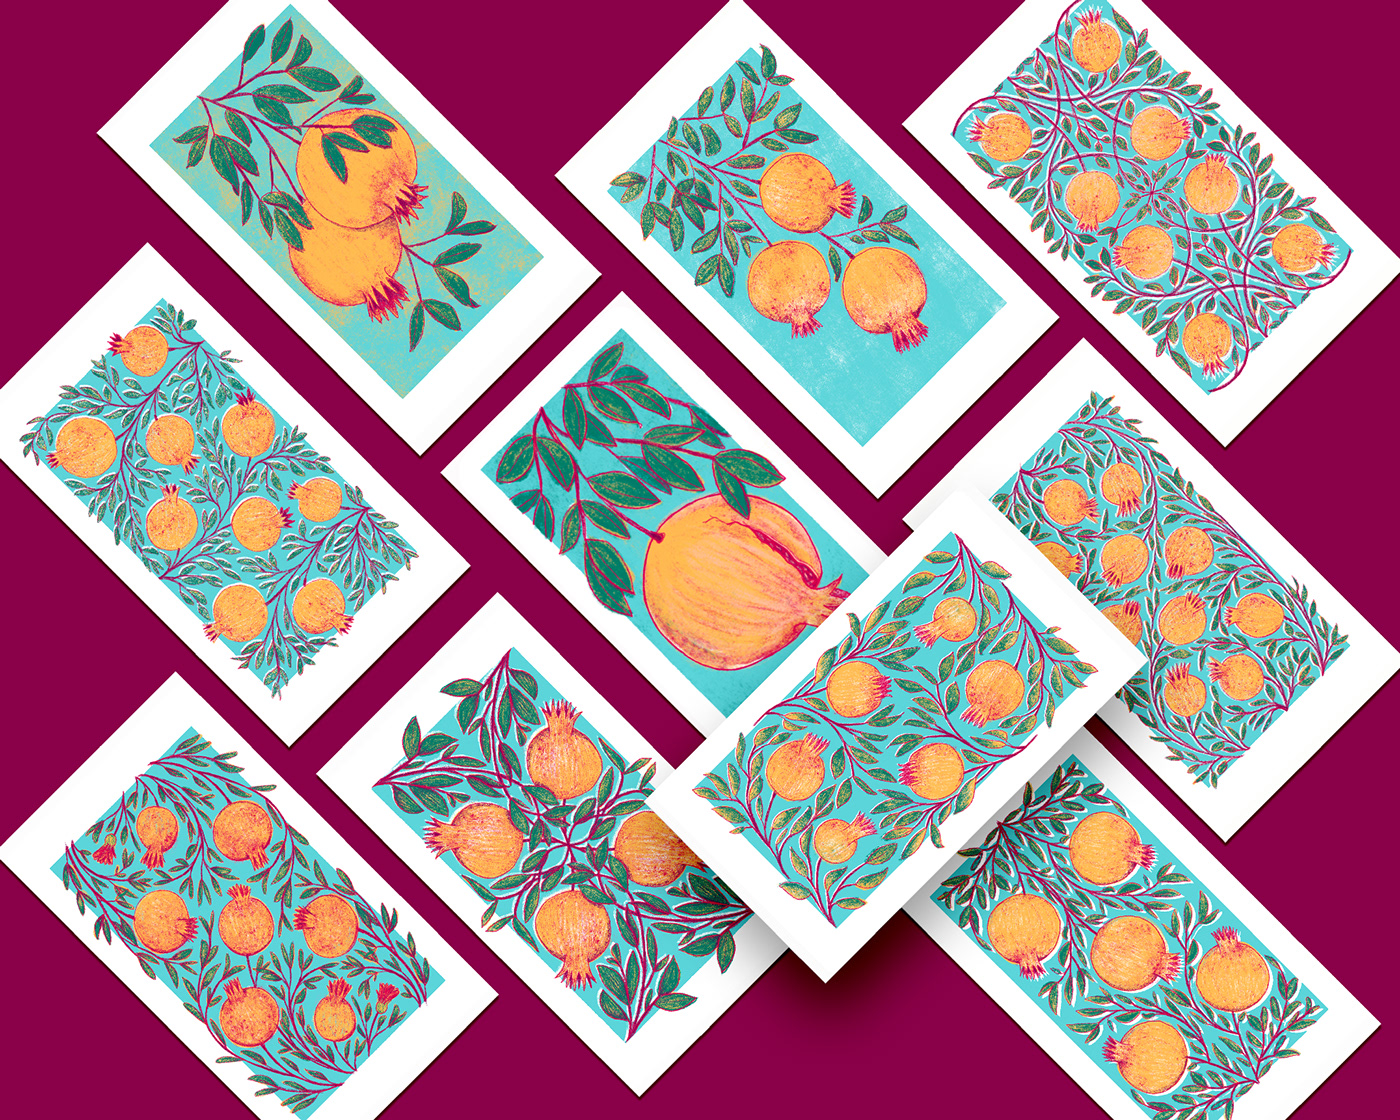 Baralho botanica pintura digital plantas Playing Cards taro tarot Tarot Cards tarot deck